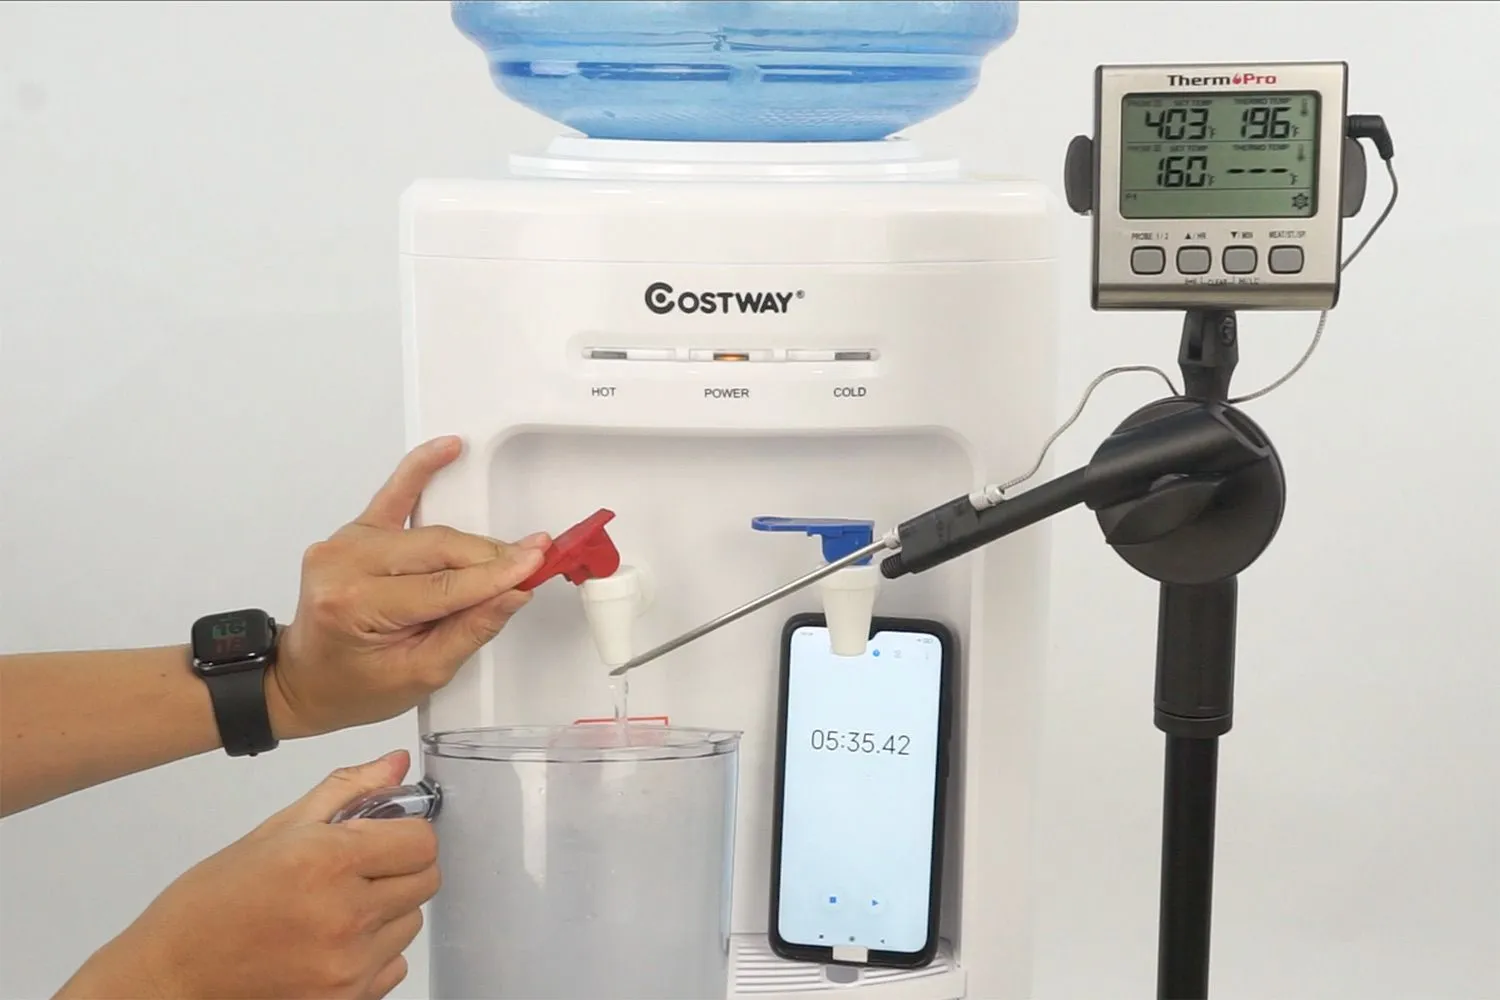 https://cdn.healthykitchen101.com/reviews/images/water-cooler-dispensers/costway-5-gallon-water-dispenser-hot-water-test-clhvn50vs0009ey886szk8a2u.jpg